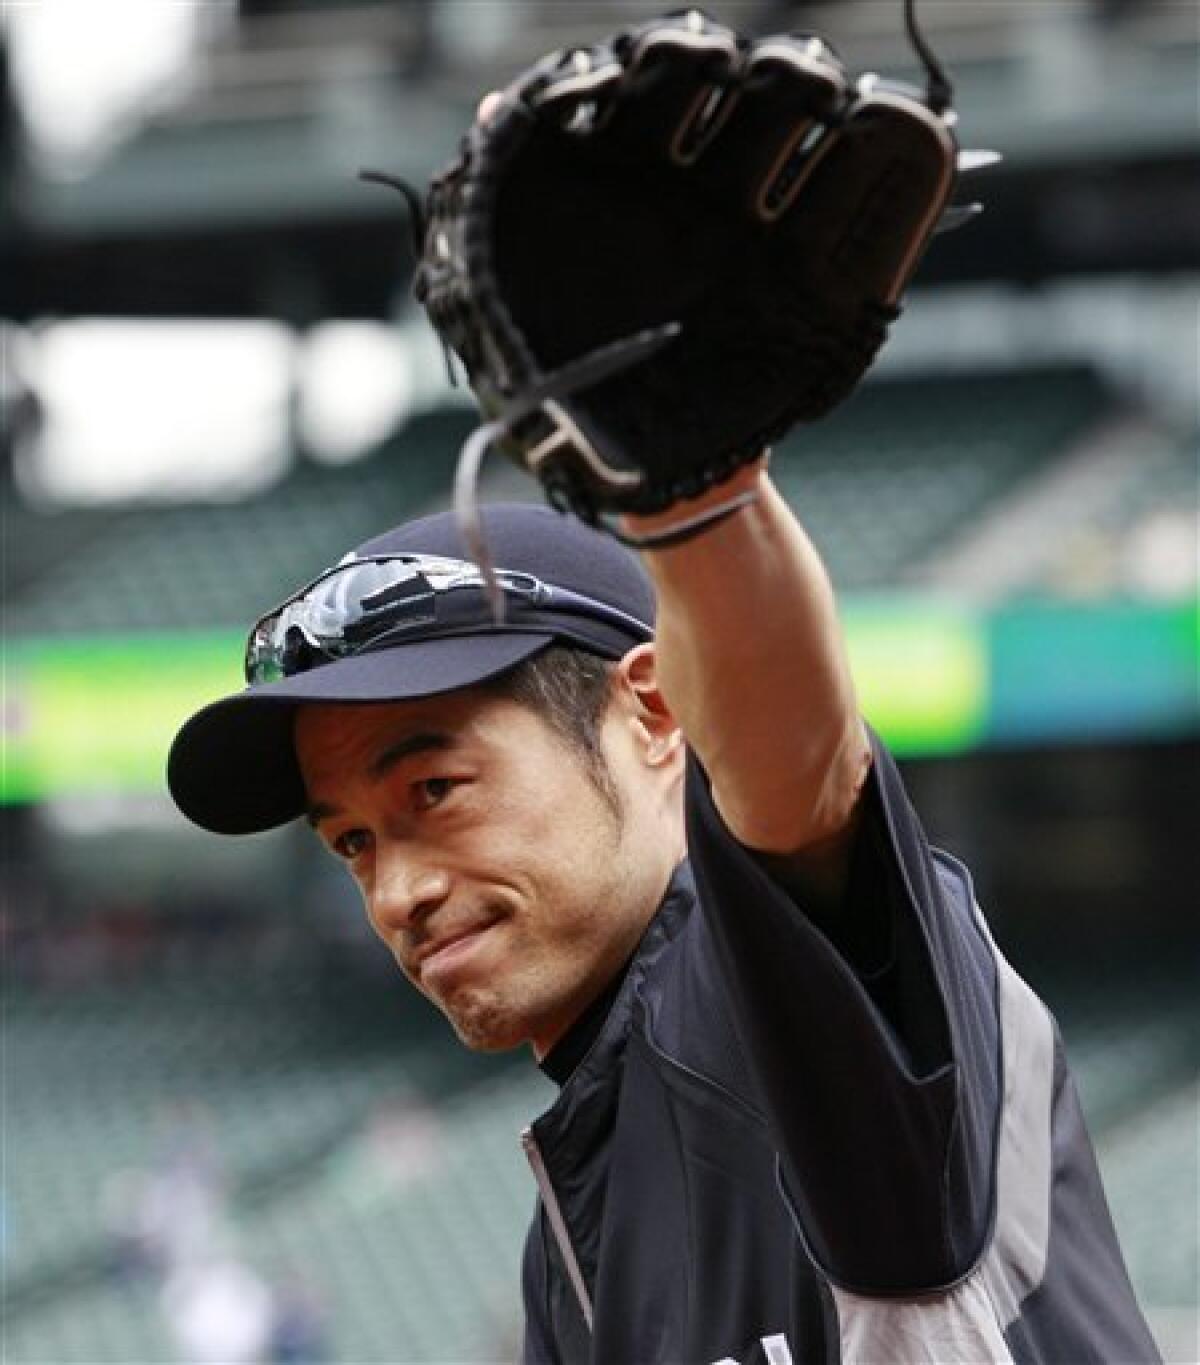 Seattle Mariners Baseball player Ichiro Suzuki batting at Safeco